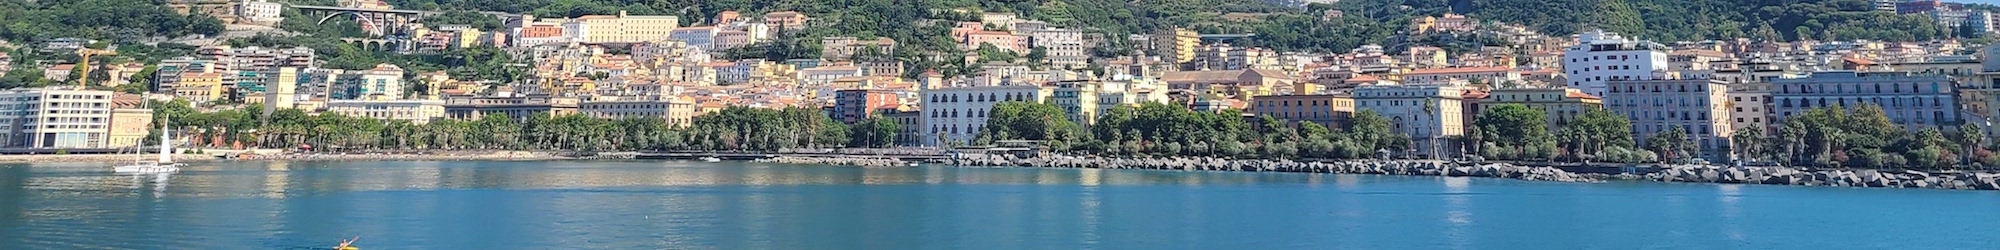 town on Italian coast